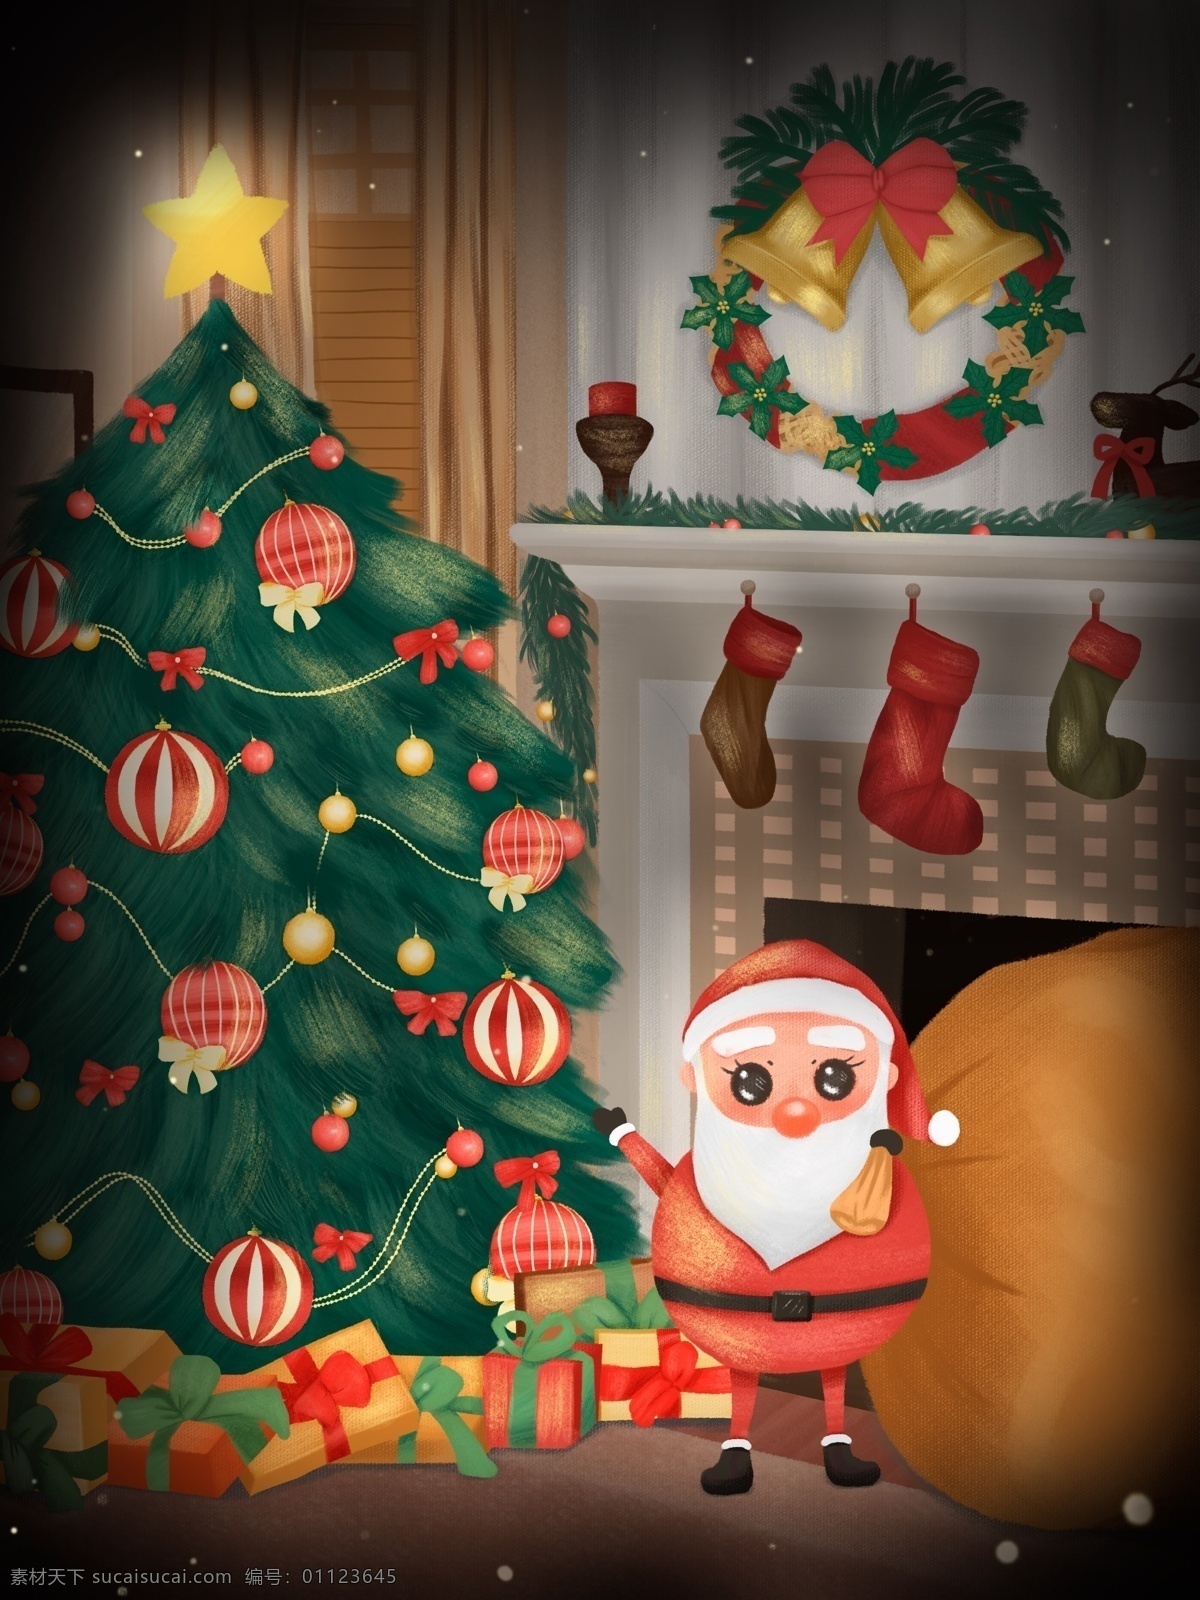 圣诞老人 拖 大 袋子 来到 家中 圣诞节 圣诞树 星星 礼盒 圣诞老公公 铃铛 袜子 礼袋 壁炉 摆饰 窗